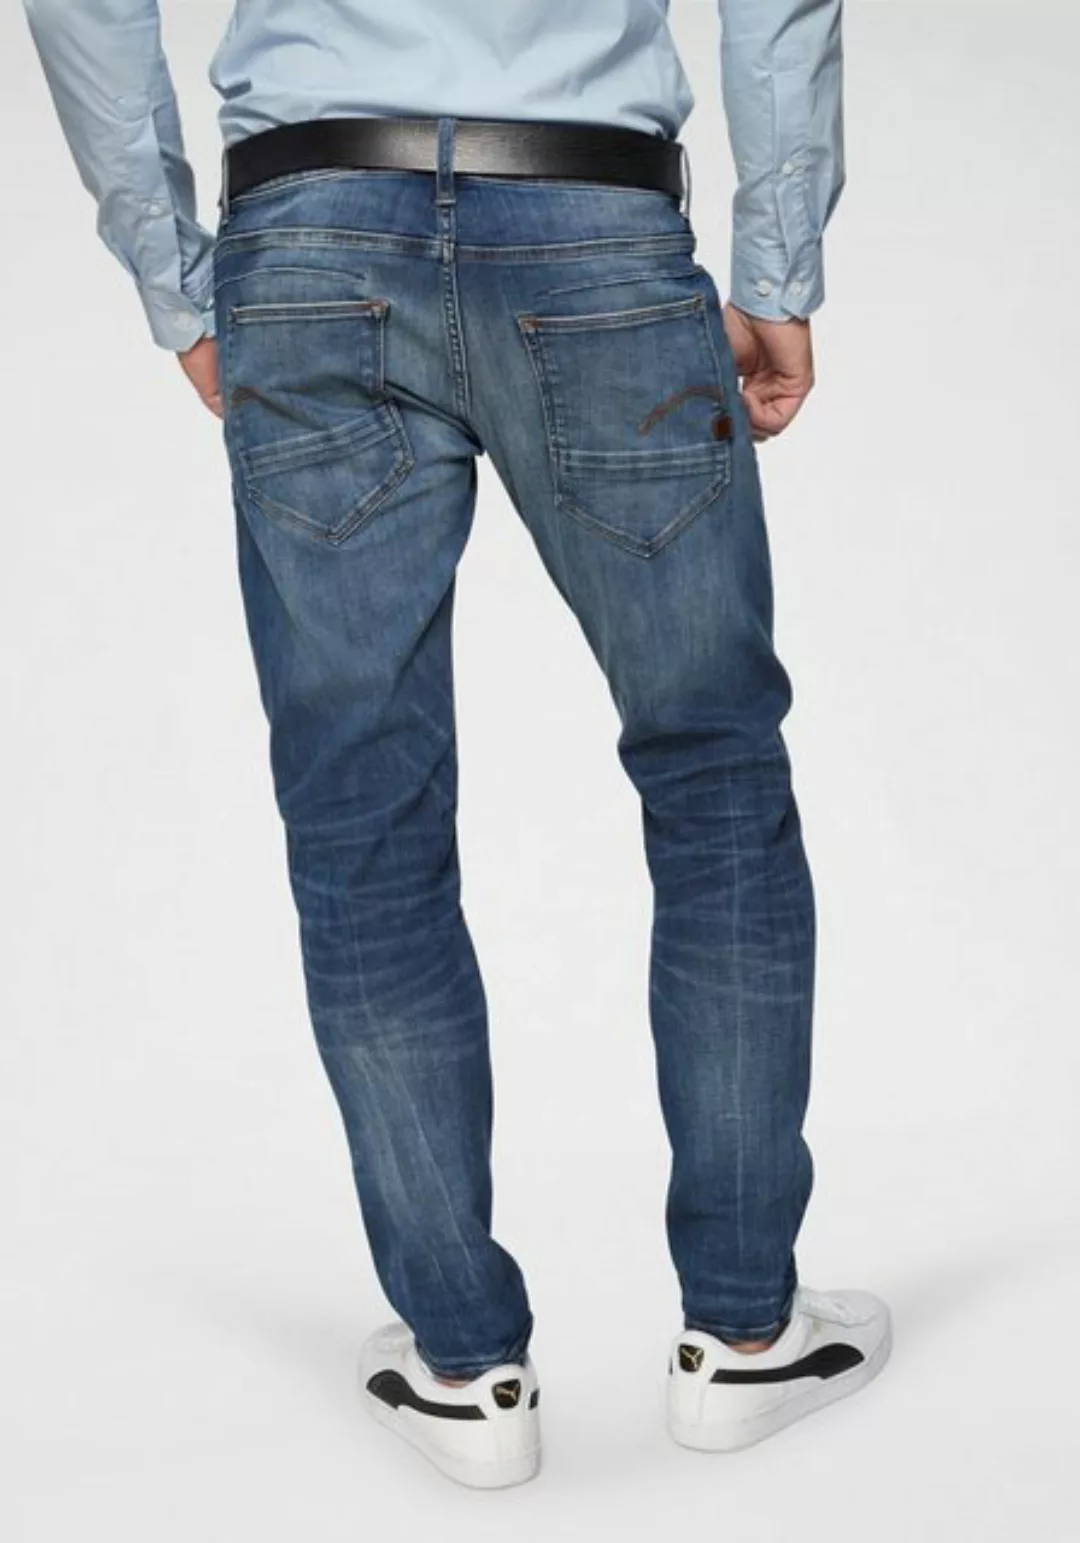 G-star D Staq 5 Pocket Slim Jeans 29 Medium Indigo Aged günstig online kaufen